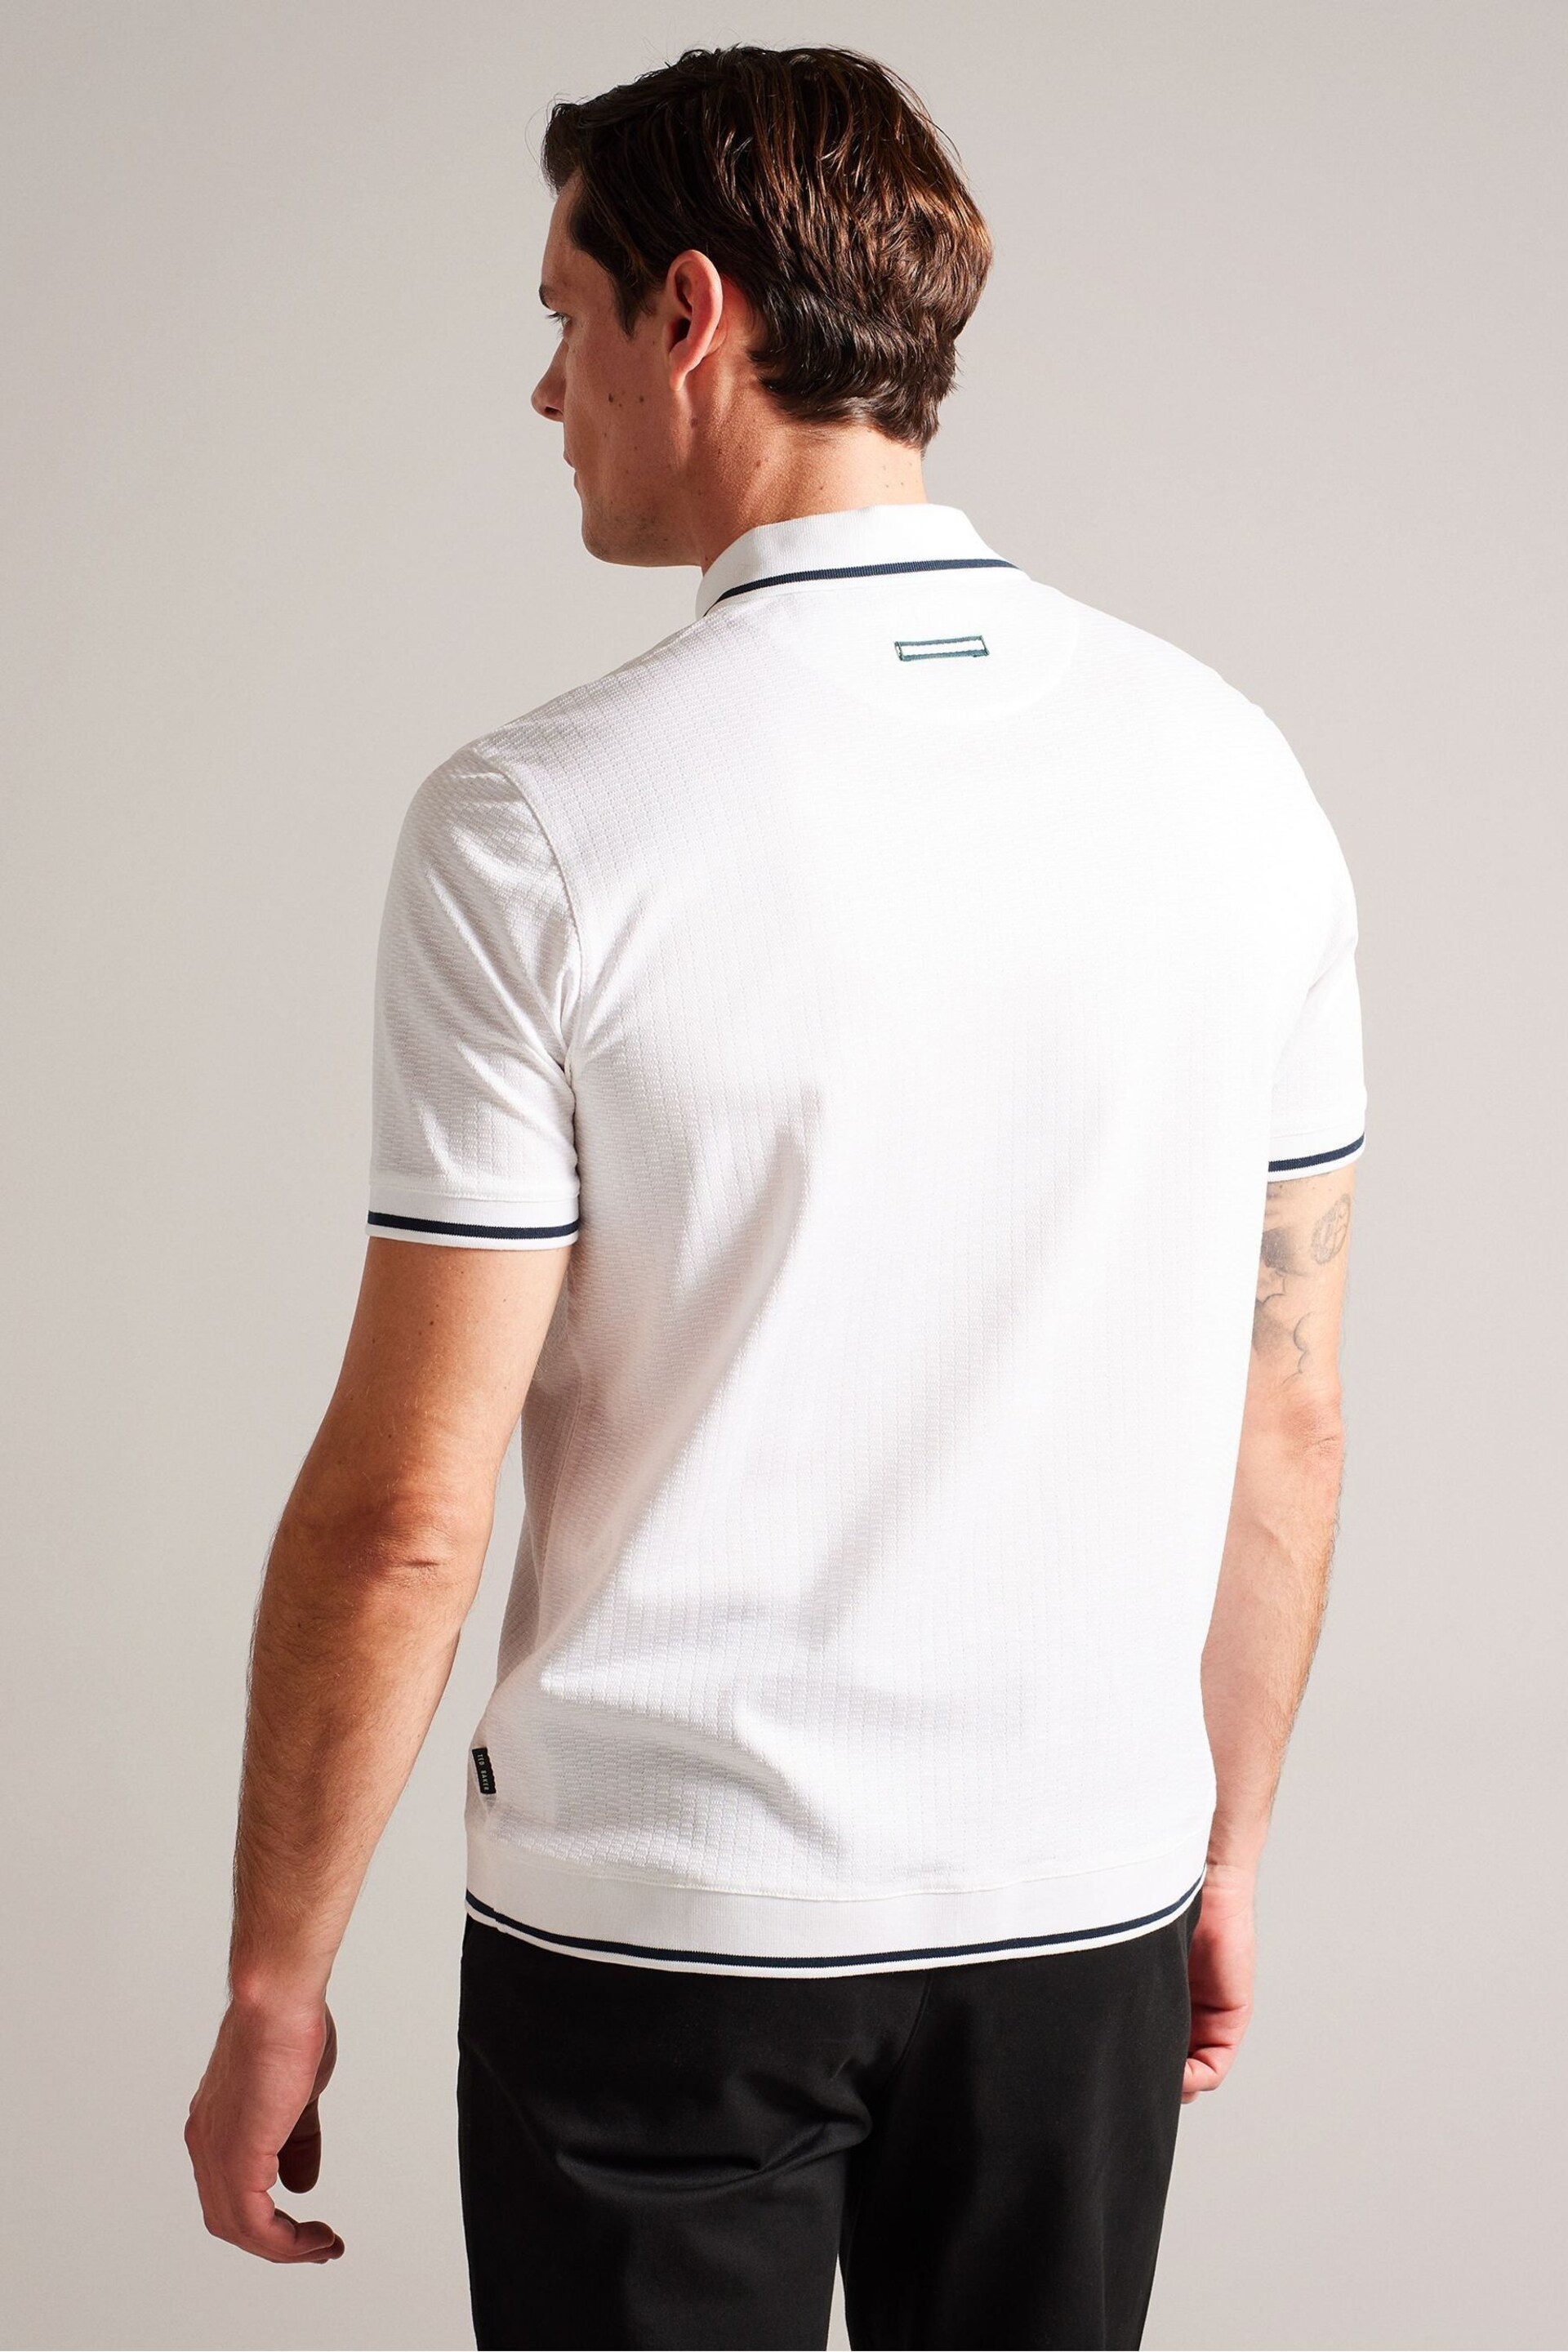 Ted Baker White Regular Erwen Short Sleeve Textured Polo Shirt - Image 2 of 7